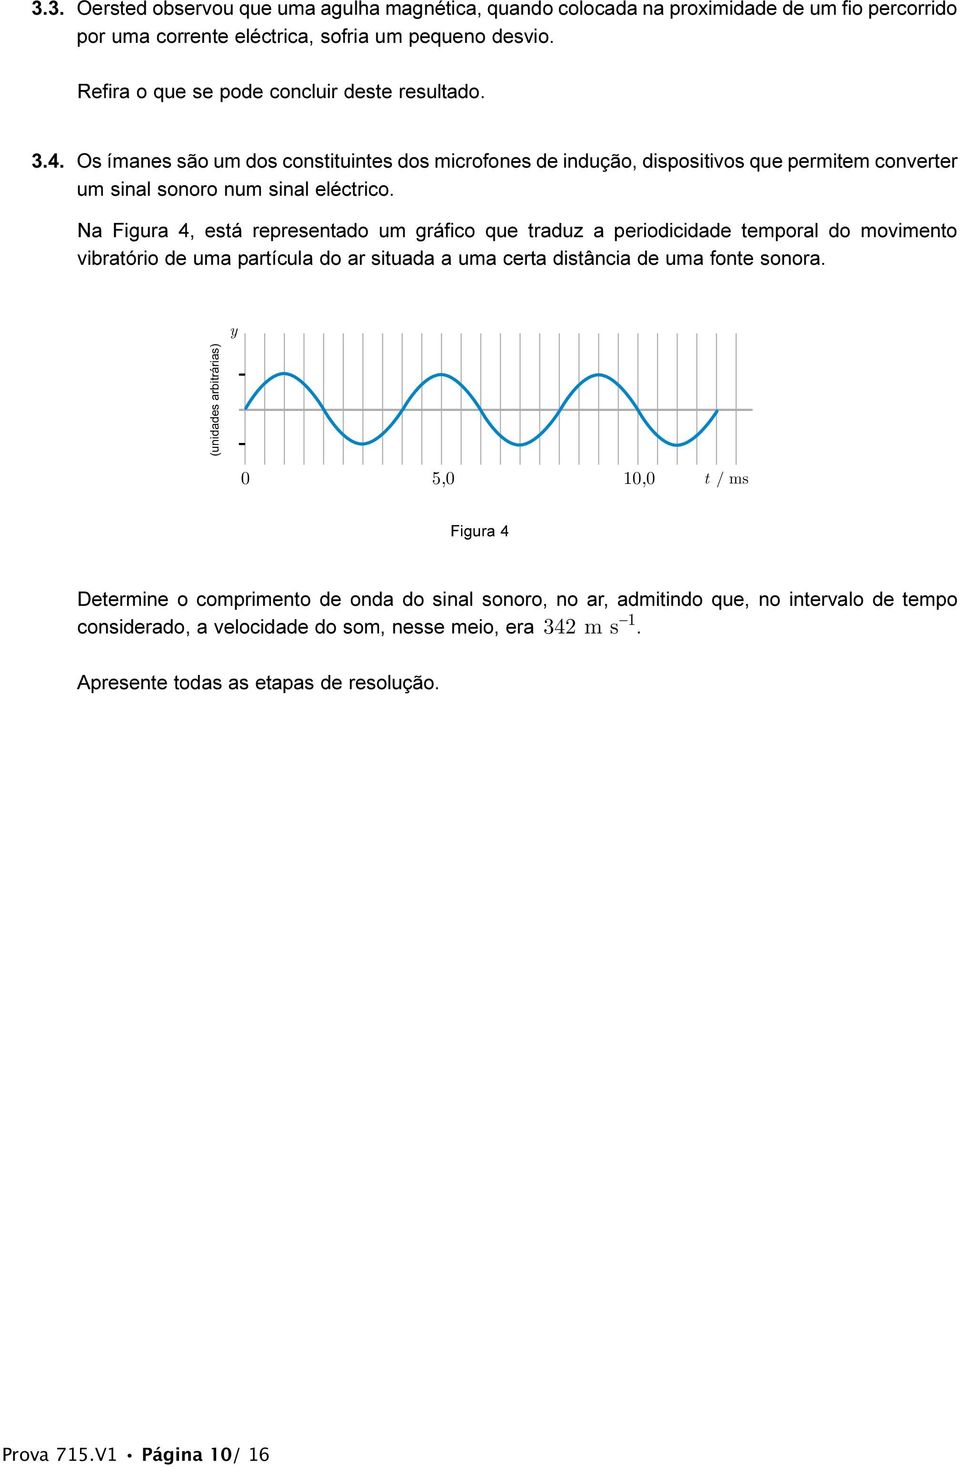 Na Figura 4, está representado um gráfico que traduz a periodicidade temporal do movimento vibratório de uma partícula do ar situada a uma certa distância de uma fonte sonora.